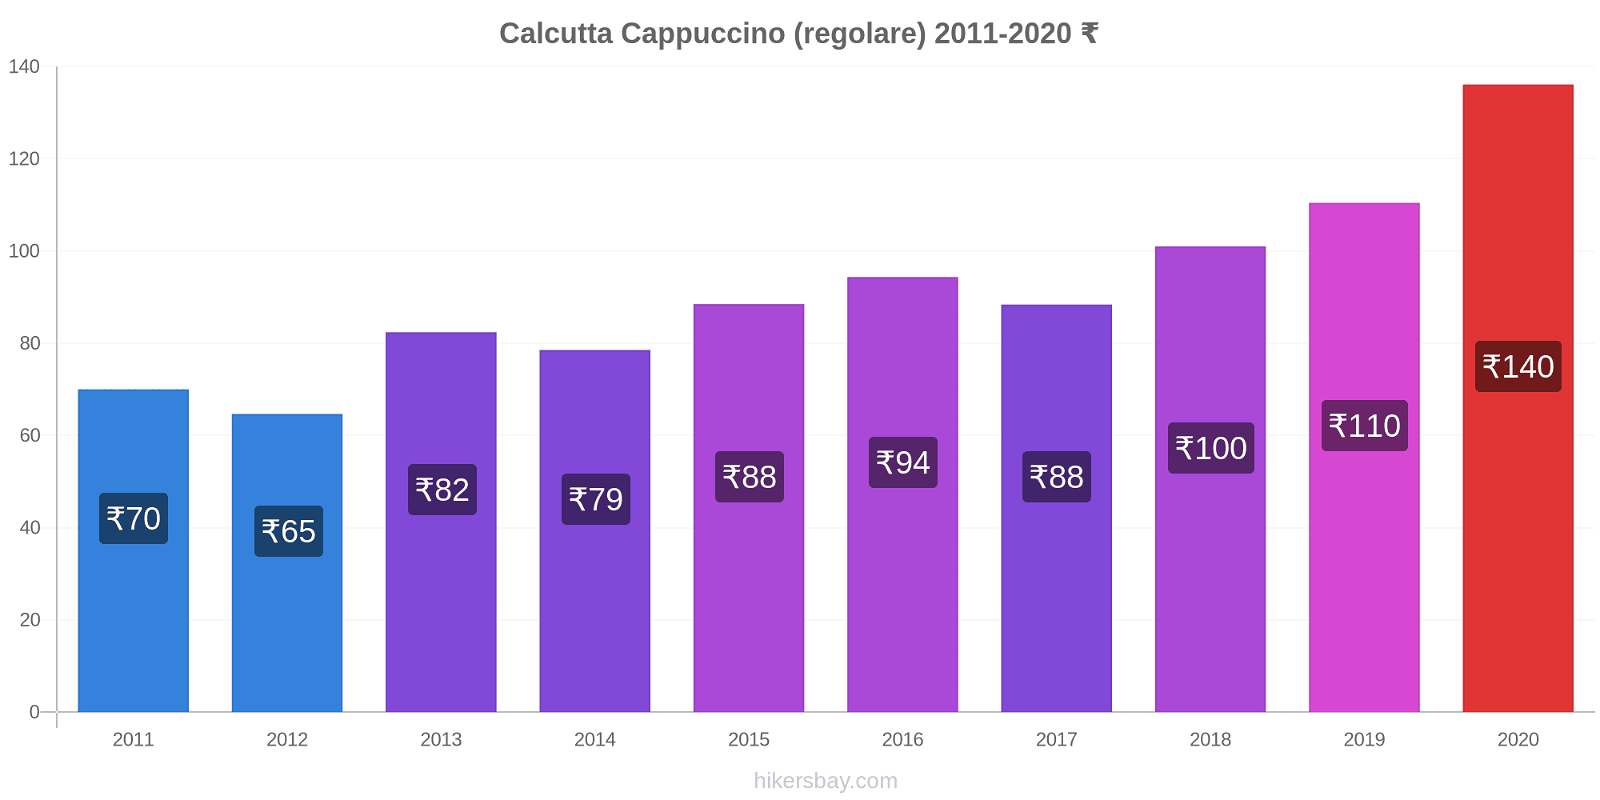 Calcutta variazioni di prezzo Cappuccino (normale) hikersbay.com